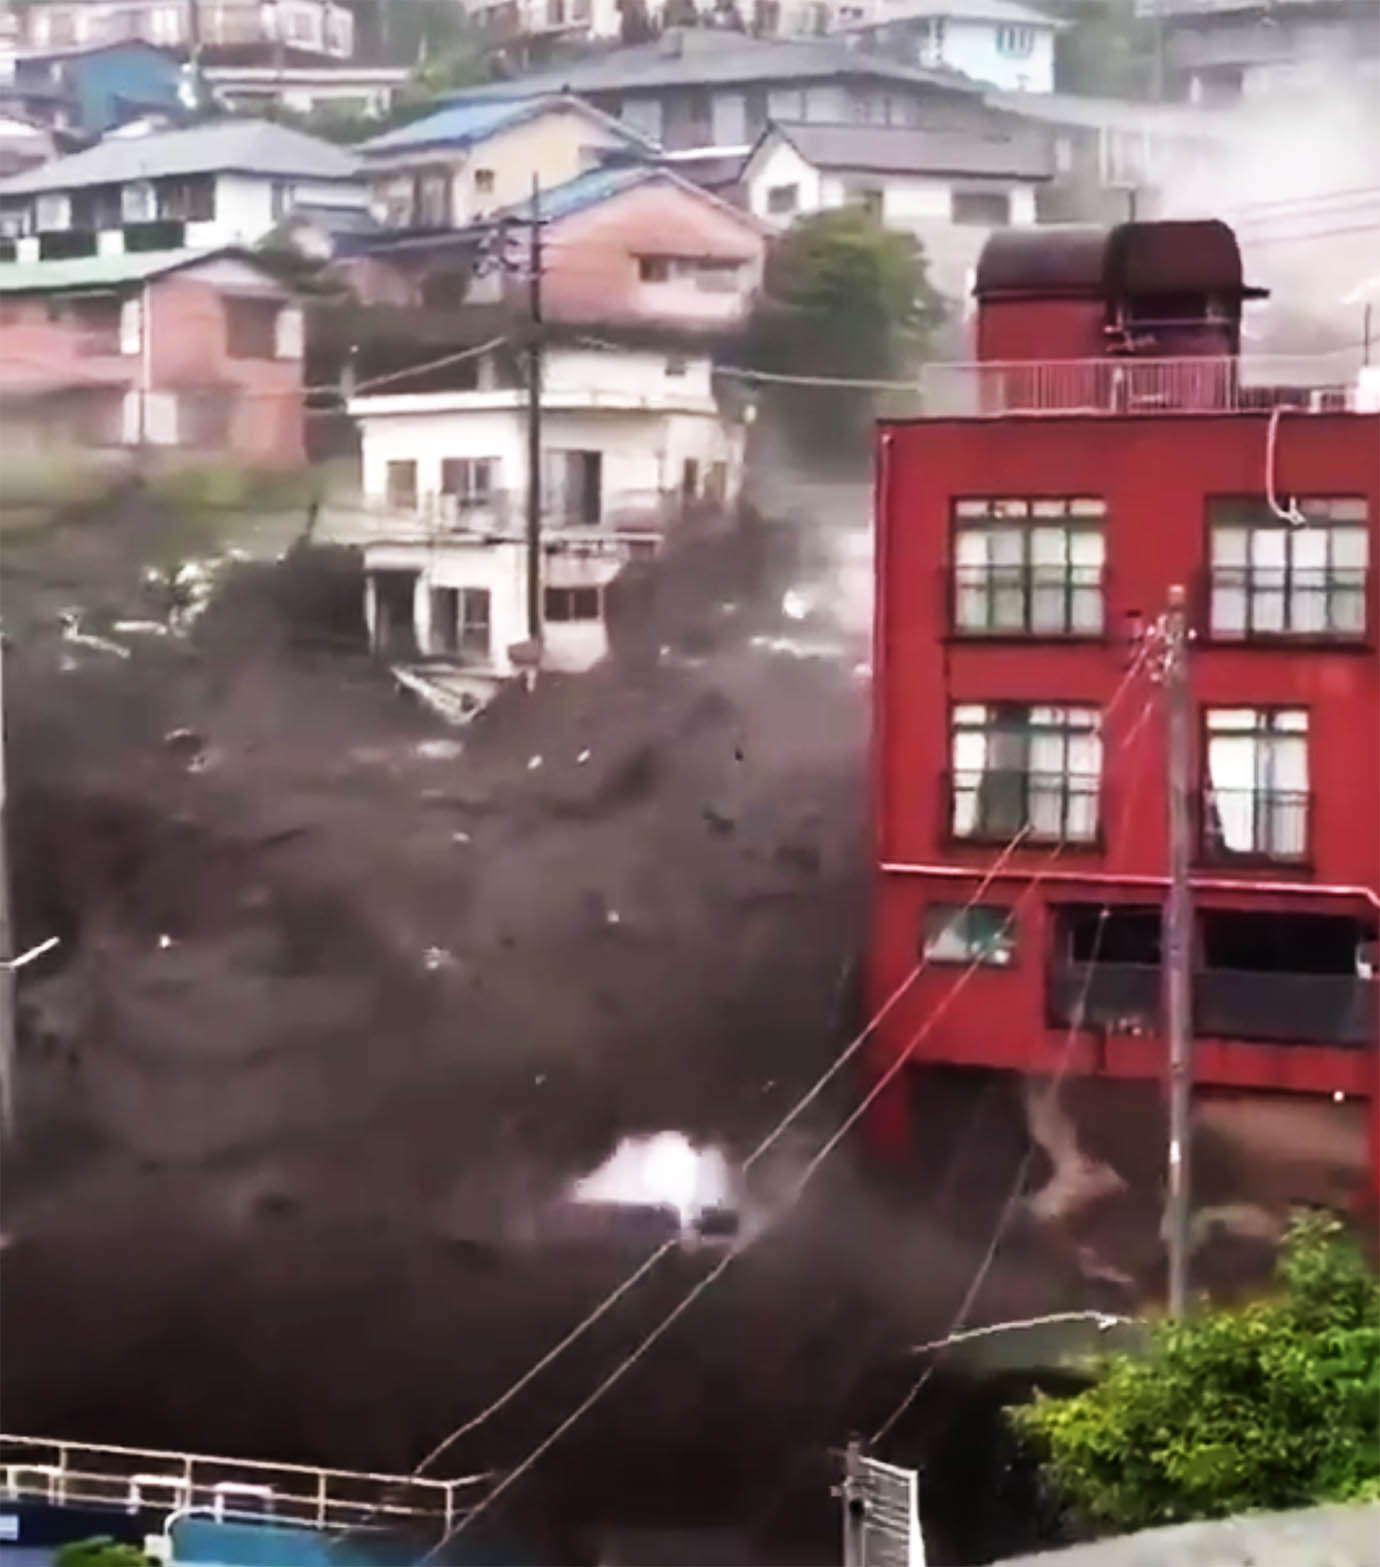 【緊急事態発生】熱海で脅威的な土石流発生か / 街が破壊されていく動画が公開される